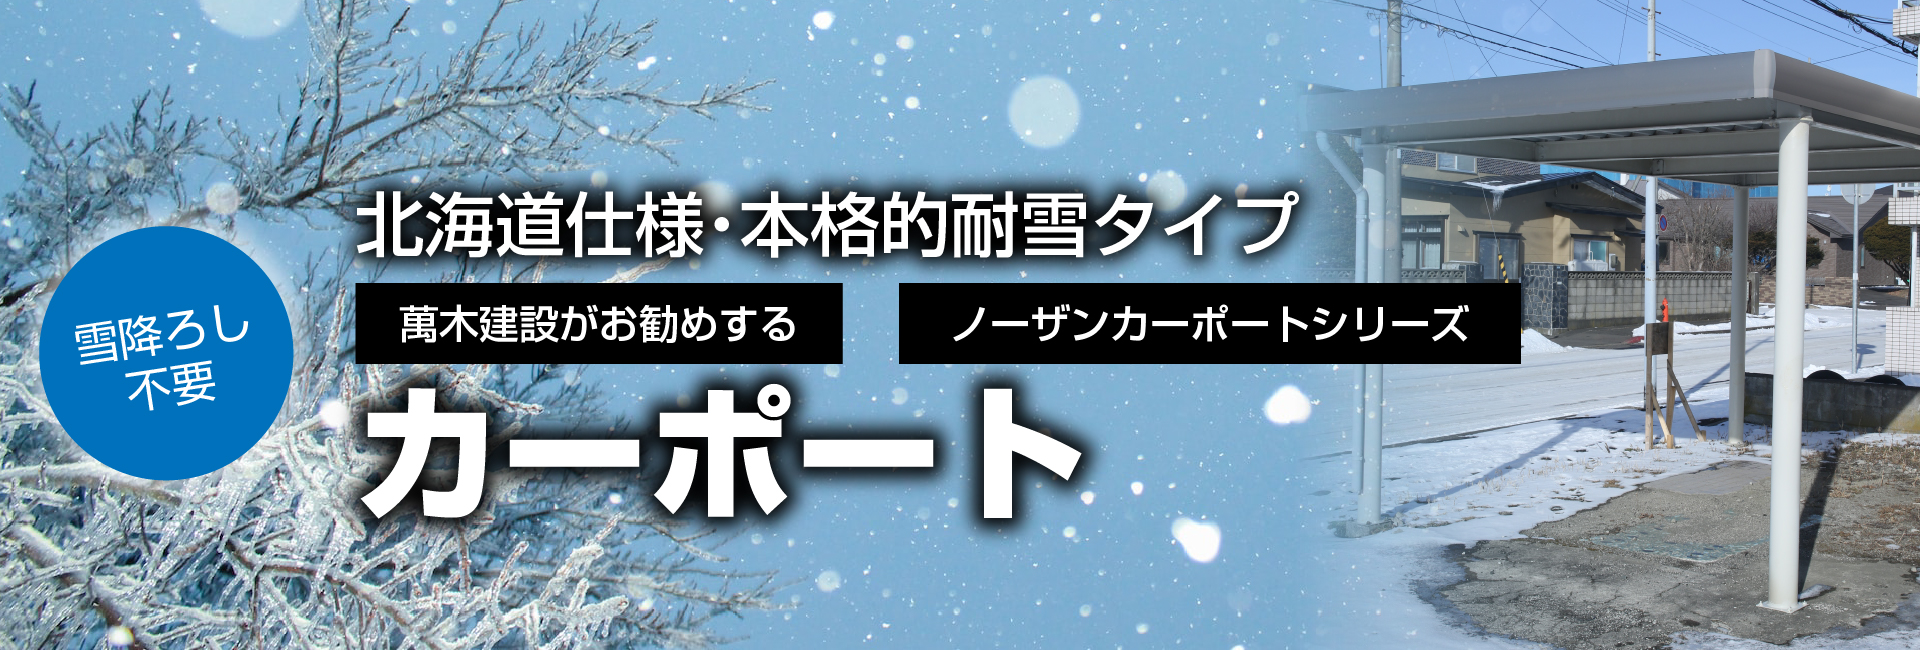 北海道仕様・本格的耐雪タイプ 萬木建設がお勧めする、雪降ろし不要のノーザンカーポートシリーズ「カーポート」